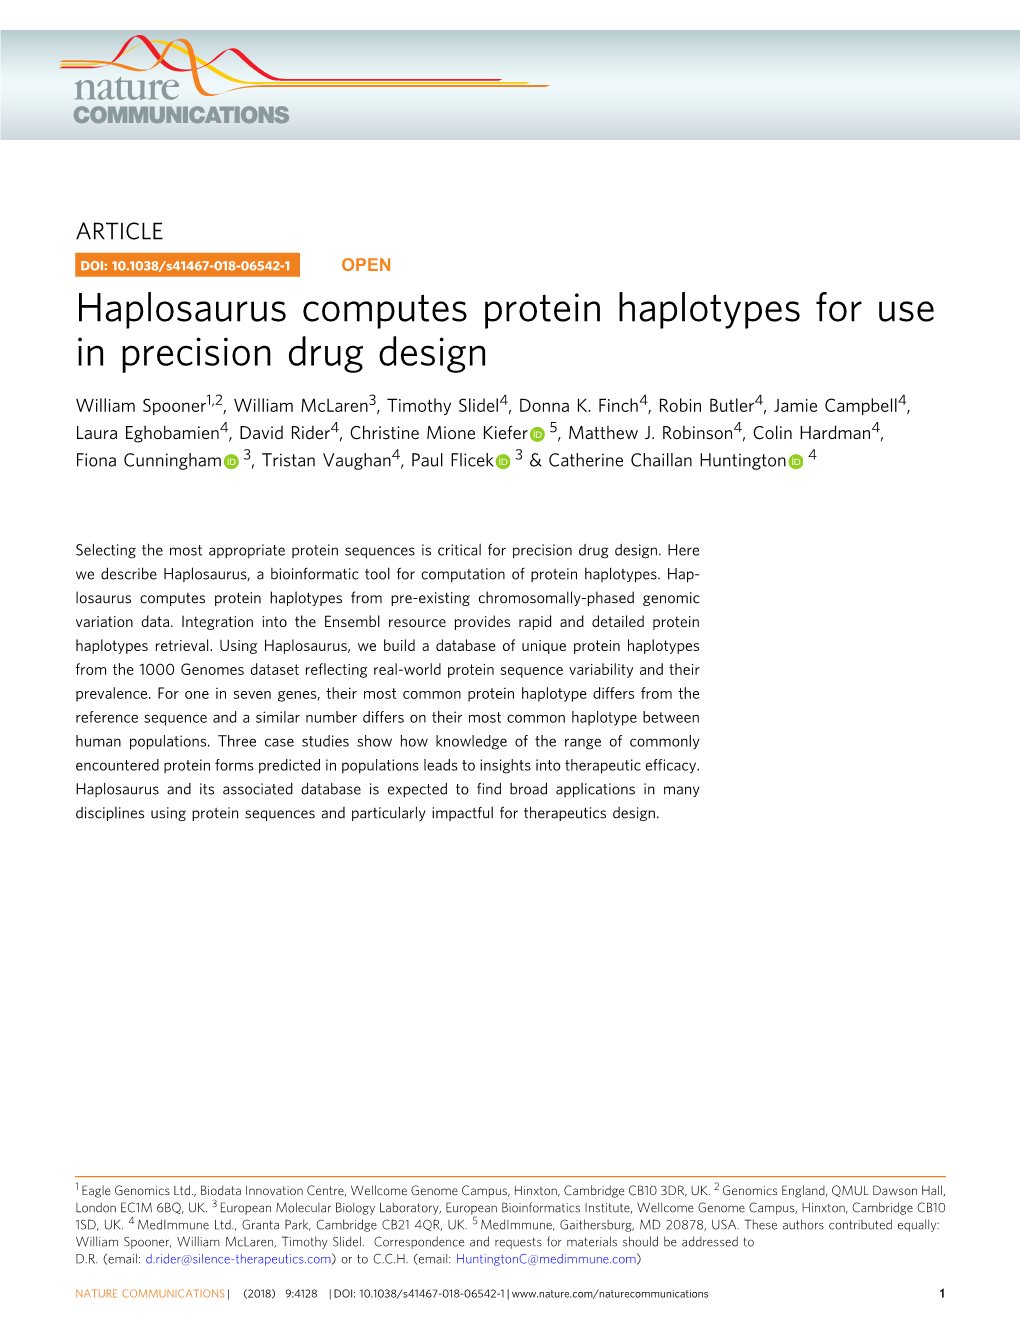 Haplosaurus Computes Protein Haplotypes for Use in Precision Drug Design